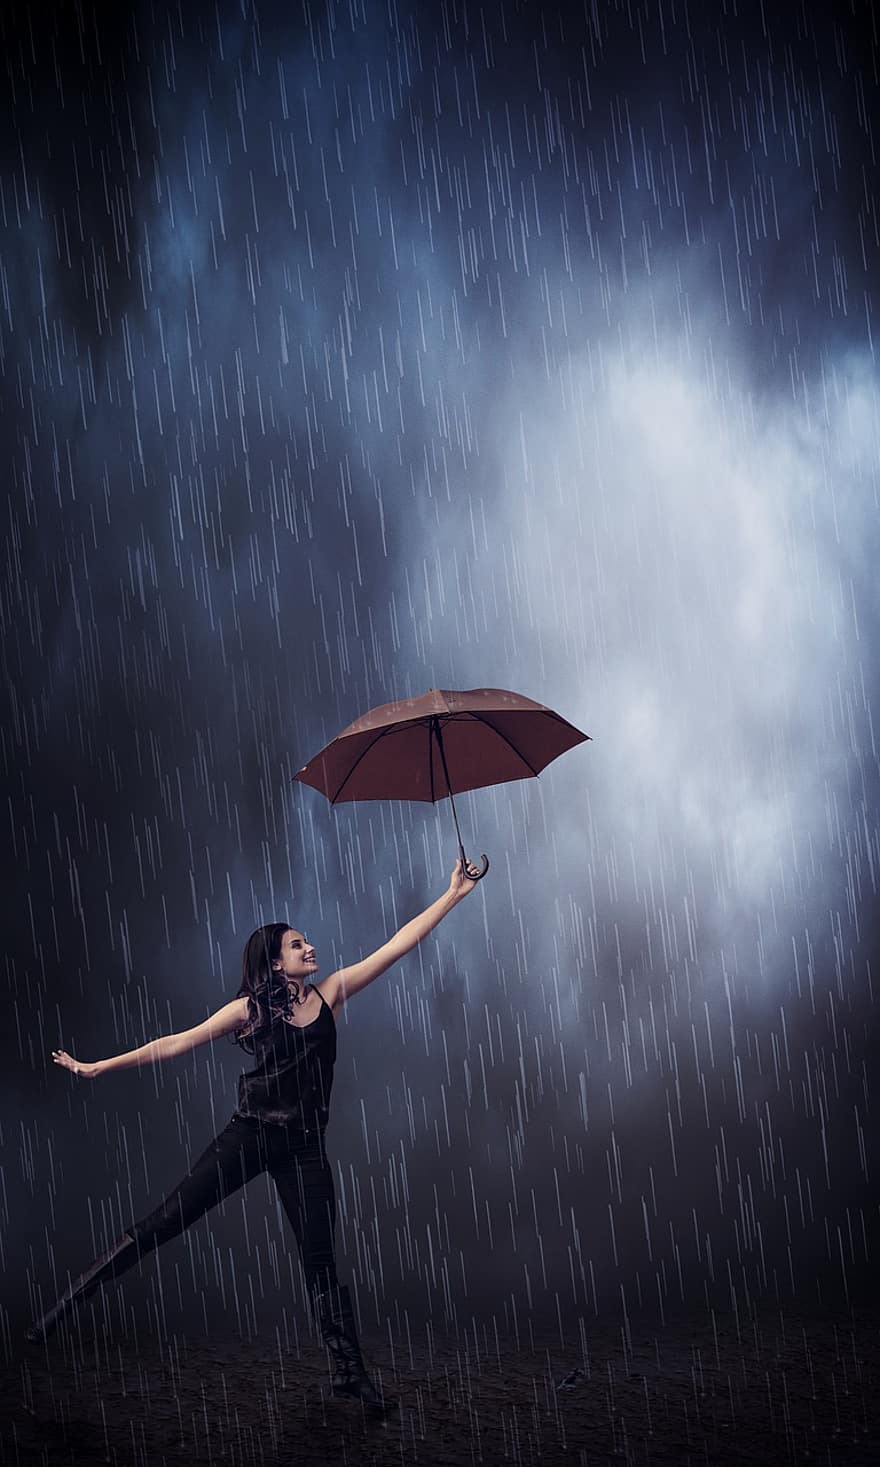 비, 우산, 소녀, 날씨, 젖은, 물, 튀김, 빗방울